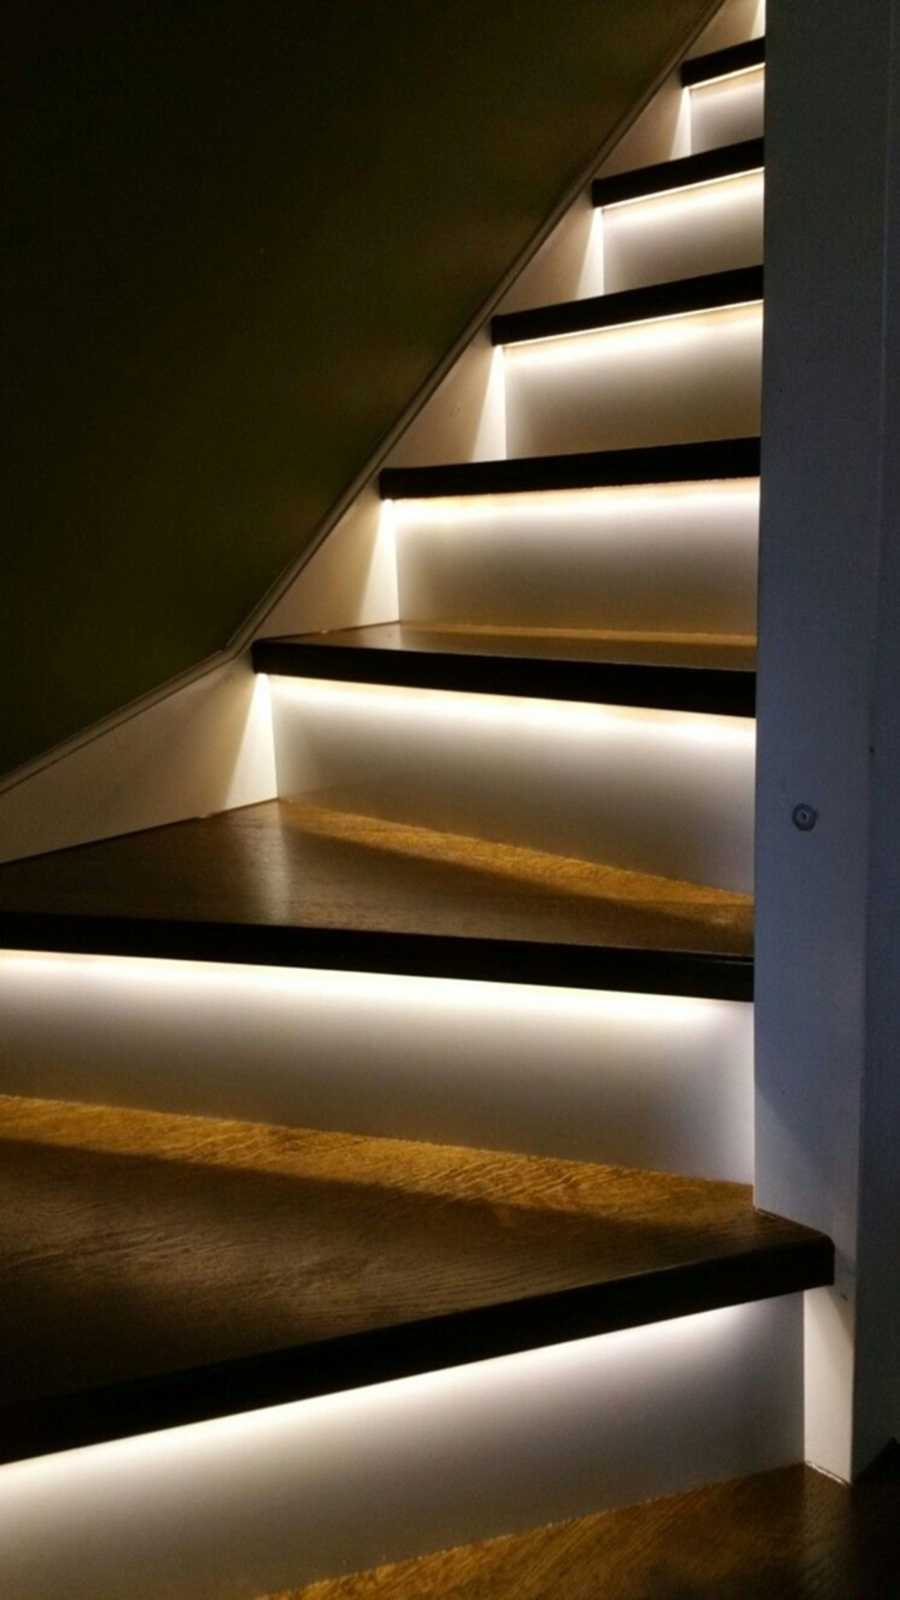 escaleras iluminaci...: ¿Cómo funciona?